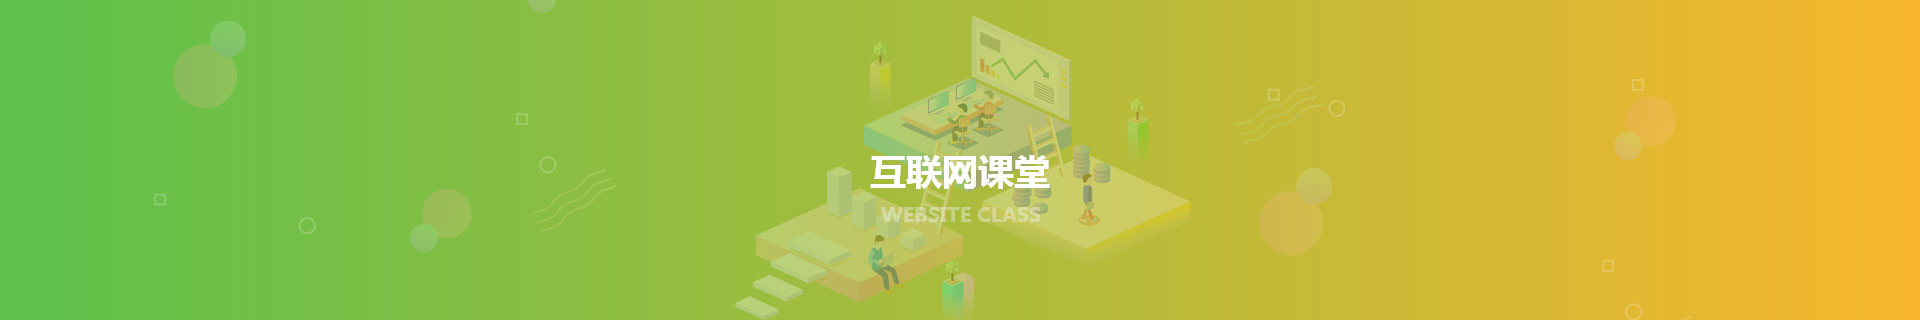 网页设计_互联网课堂_天津网站建设制作与开发_匠人匠心科技